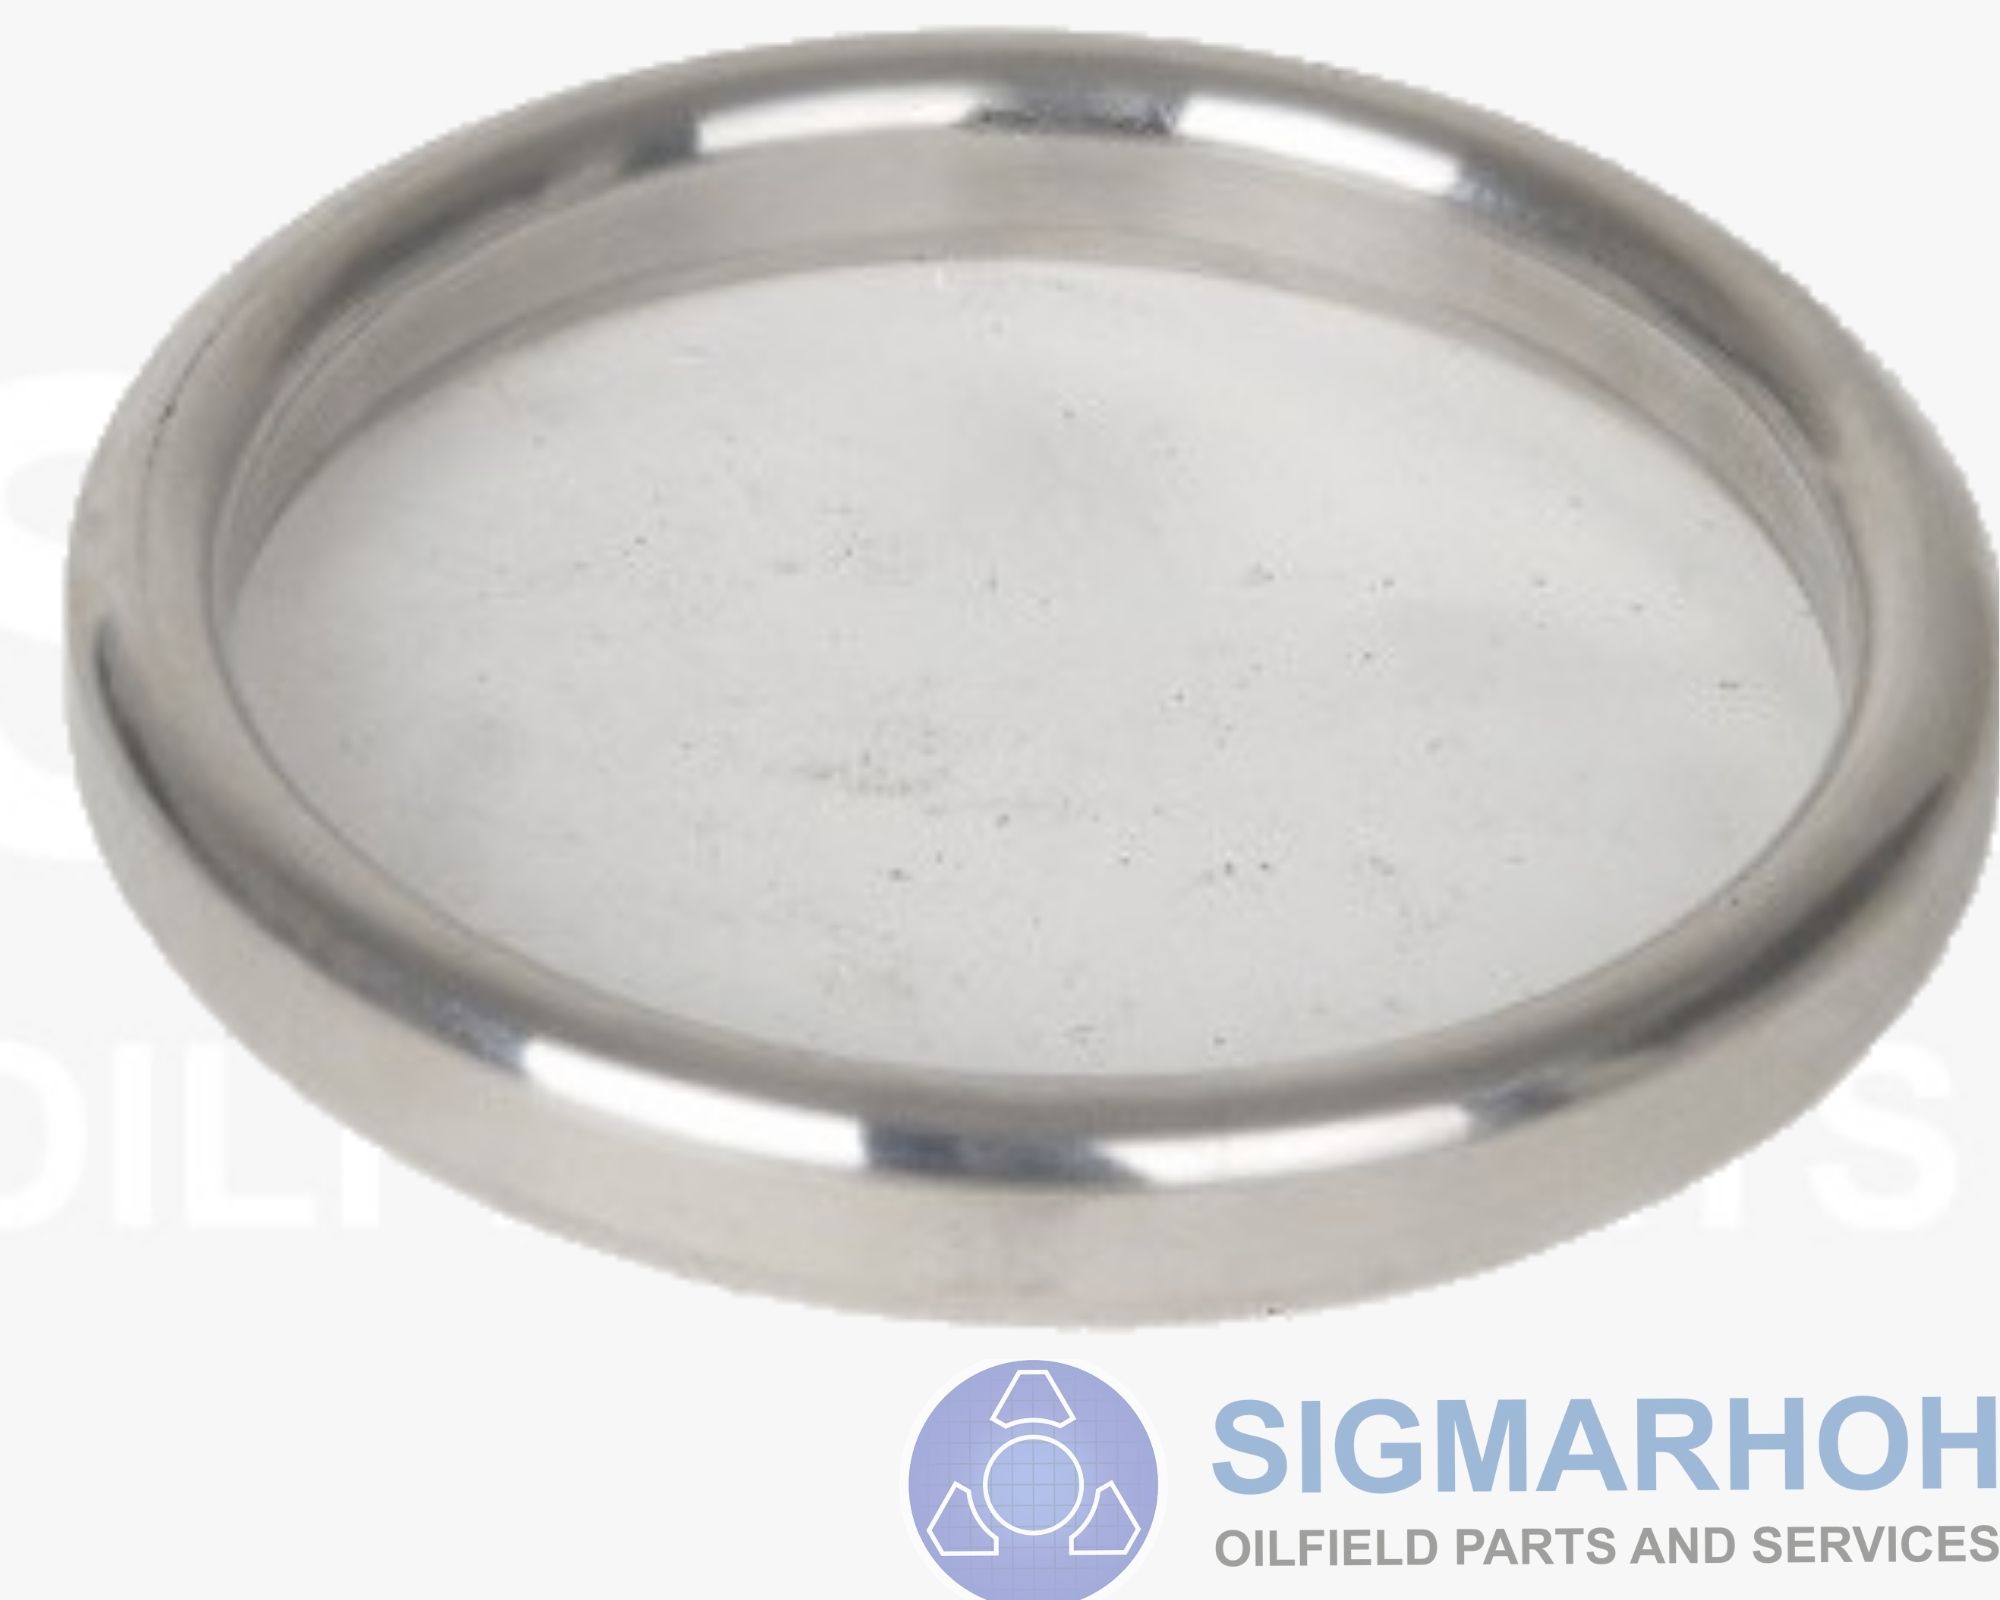 Anéis de Vedação Metálicos / Metal Sealing Rings